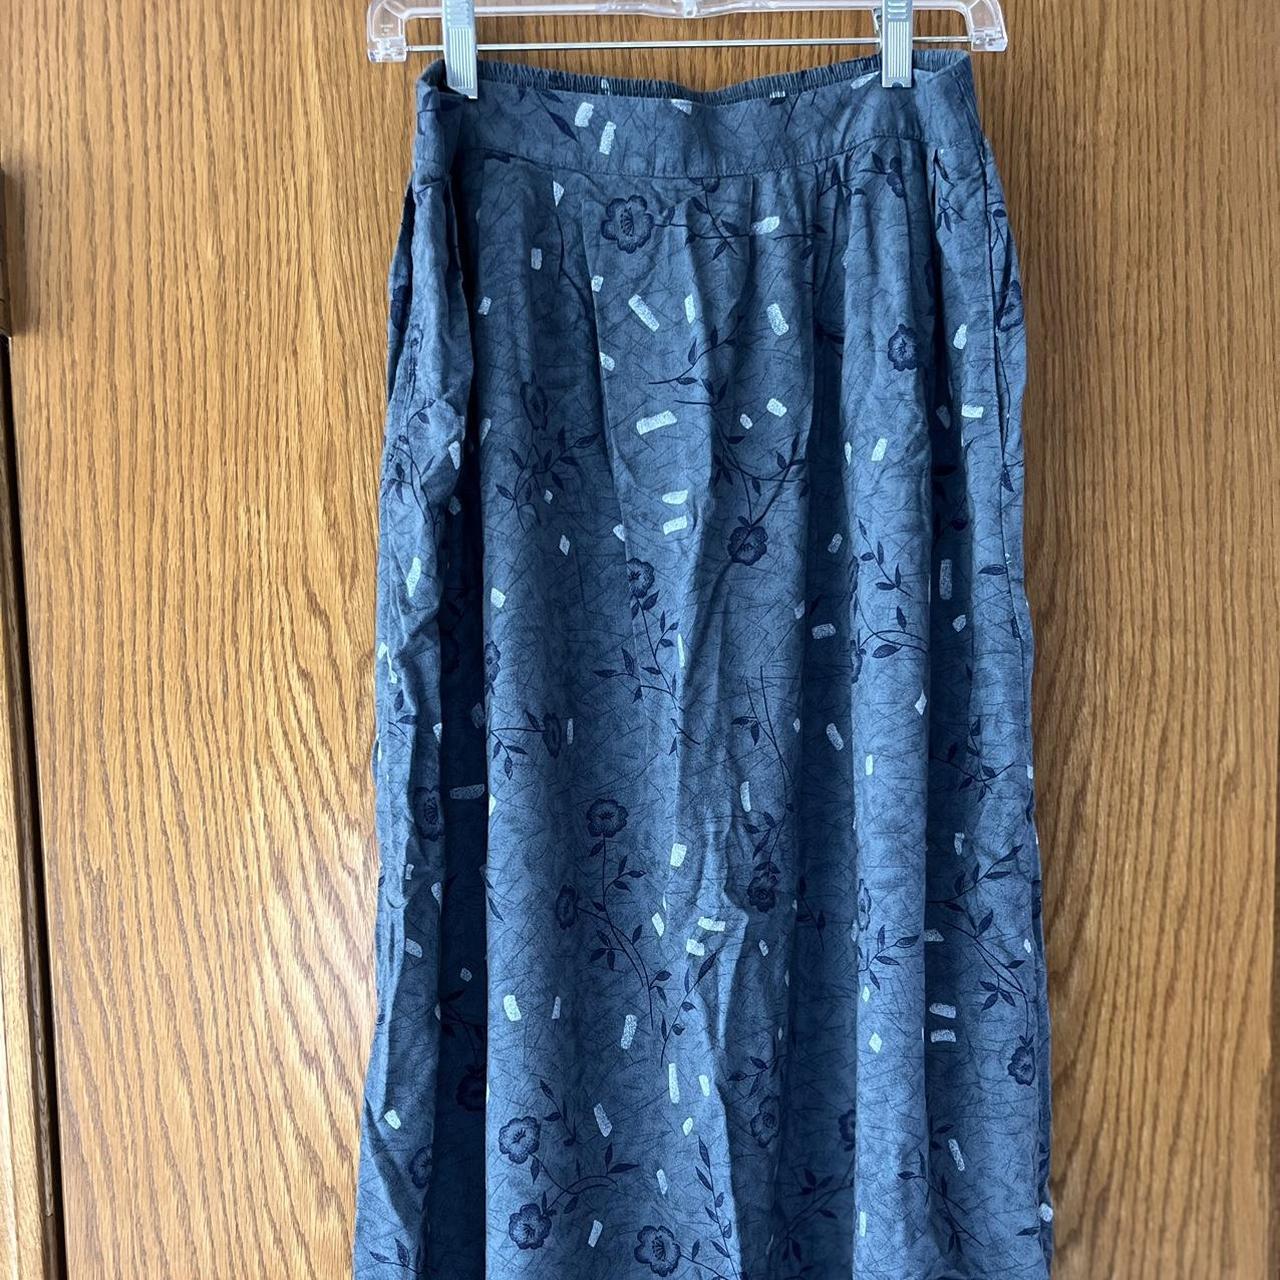 Cute maxi flower pattern skirt, never worn, just not... - Depop